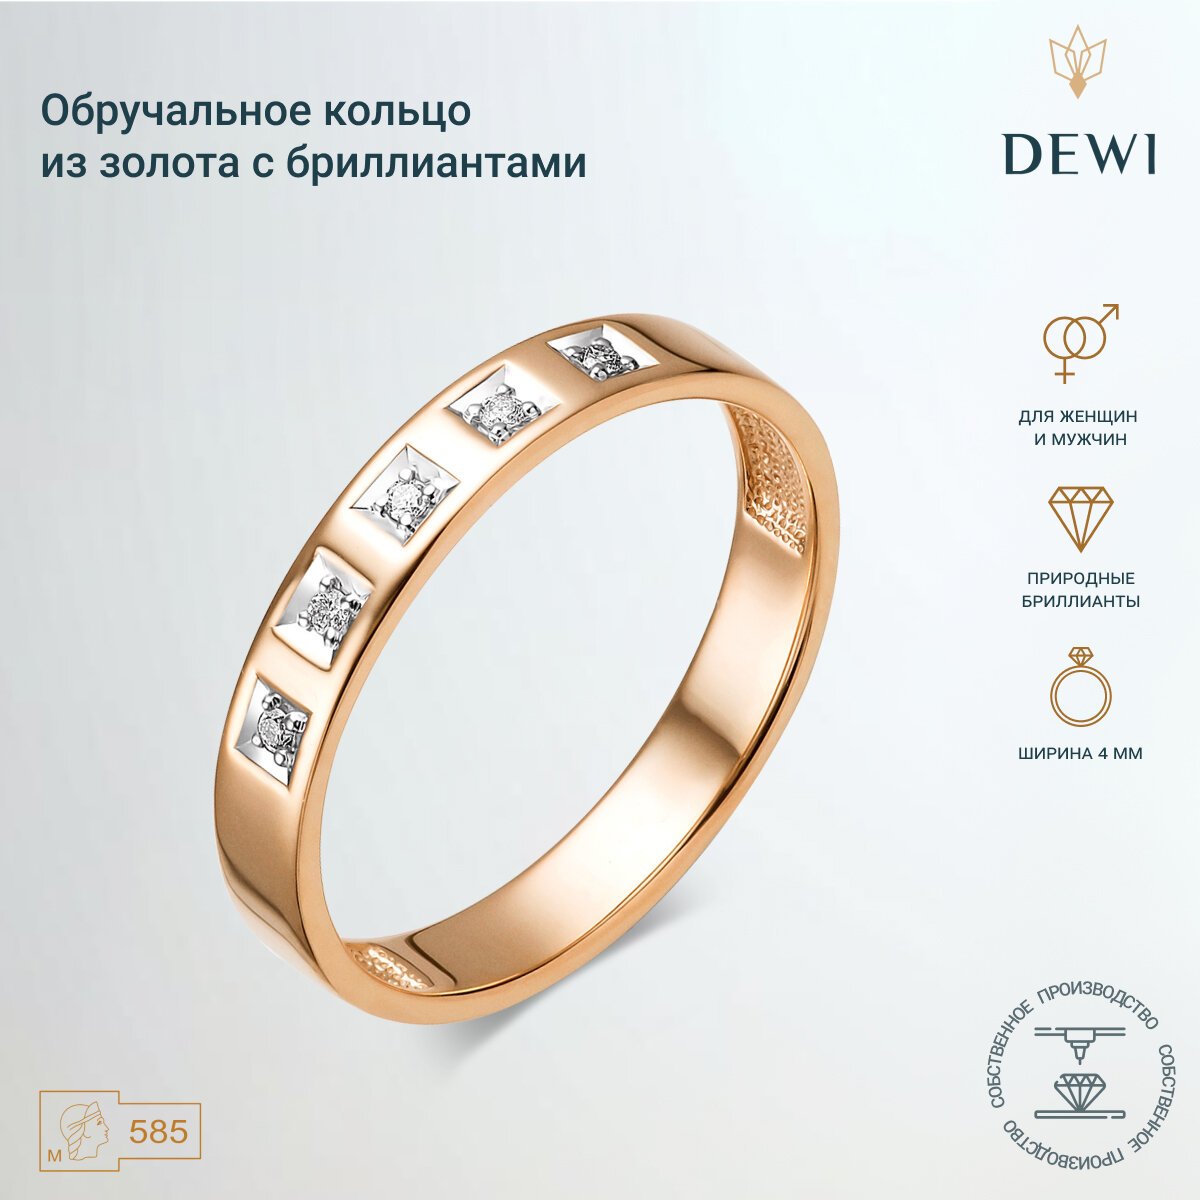 Кольцо обручальное Dewi, красное золото, 585 проба, родирование, бриллиант, размер 18.5, ширина 4 мм, золотой, белый